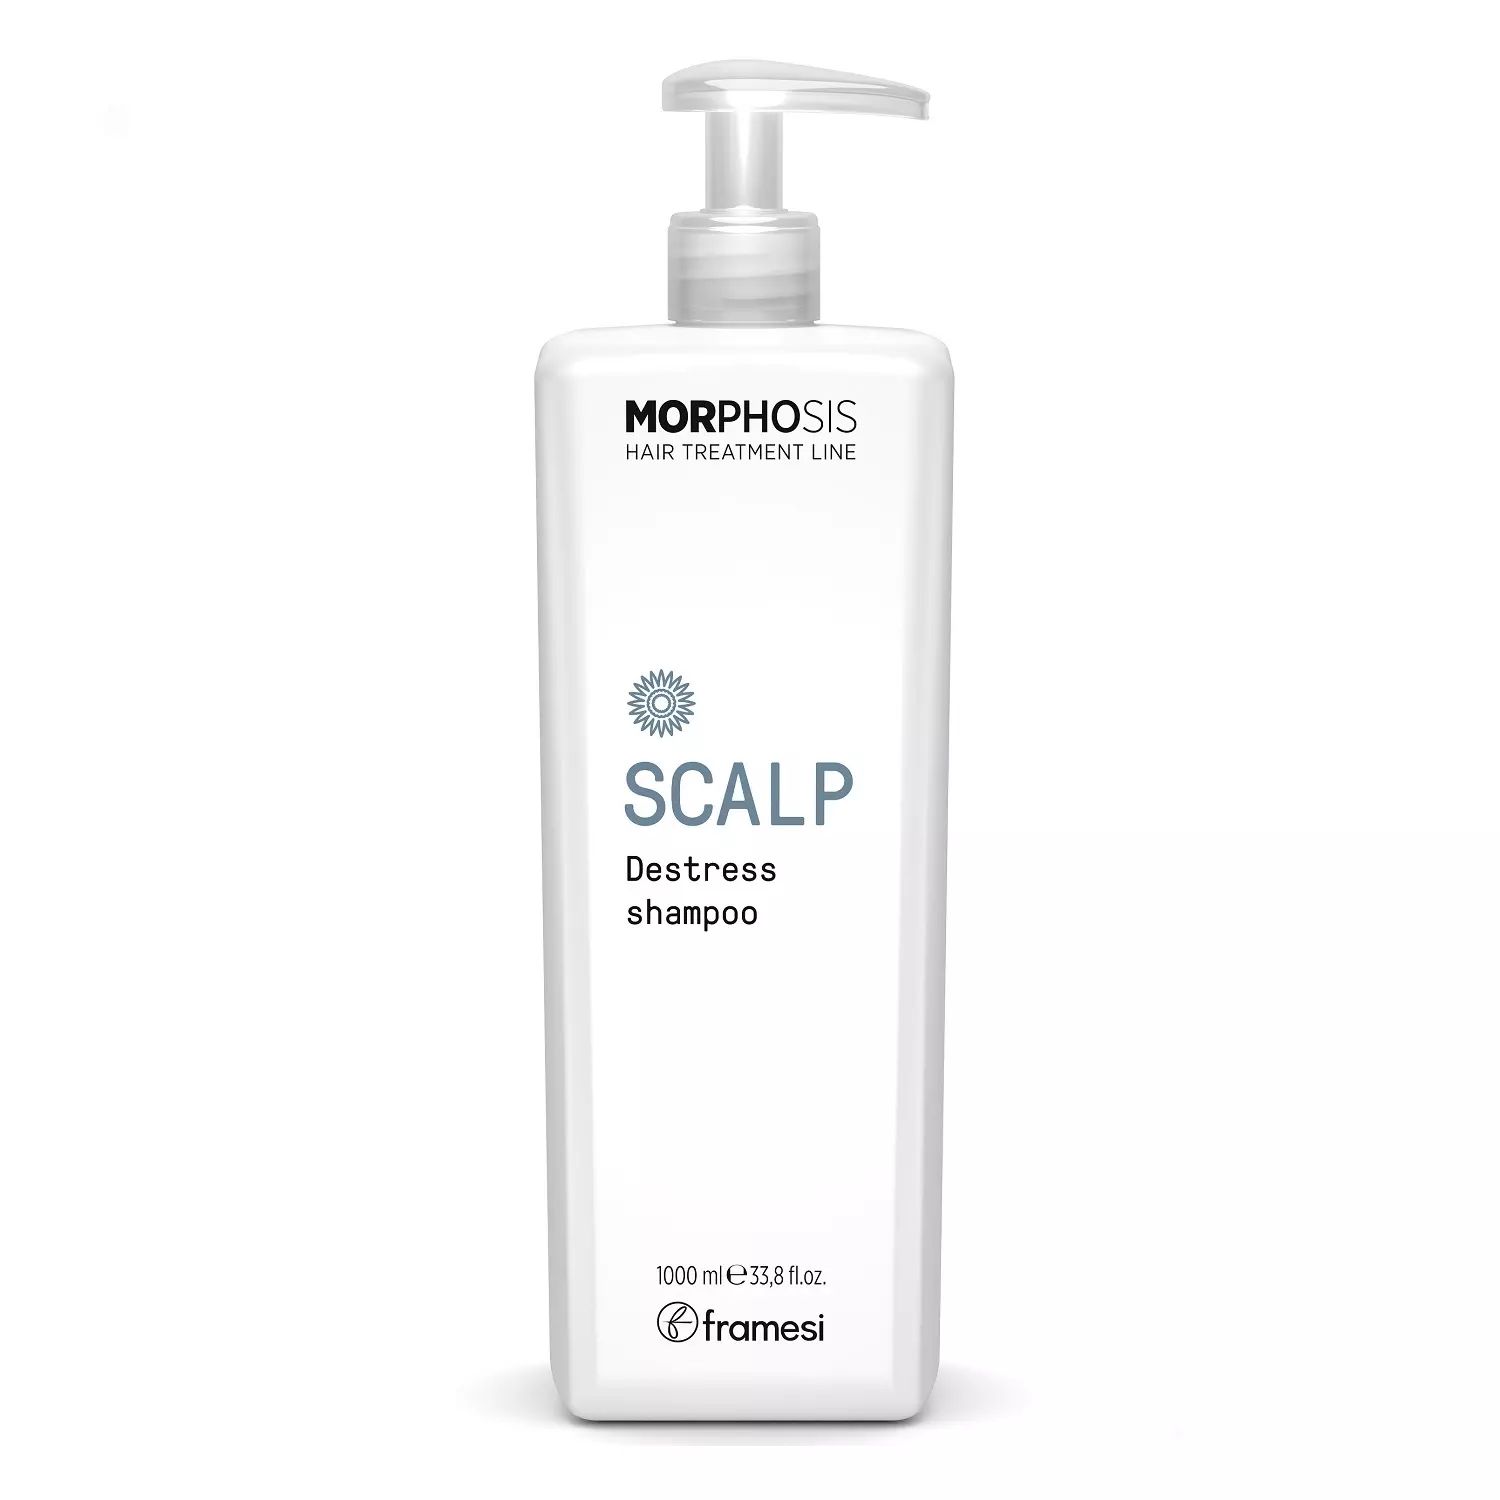 Шампунь Framesi Scalp destress shampoo для чувствительной кожи головы 1000 мл шампунь phytocomplex натуральный турецкий ahl keratin biotin shampoo с кератином биотином